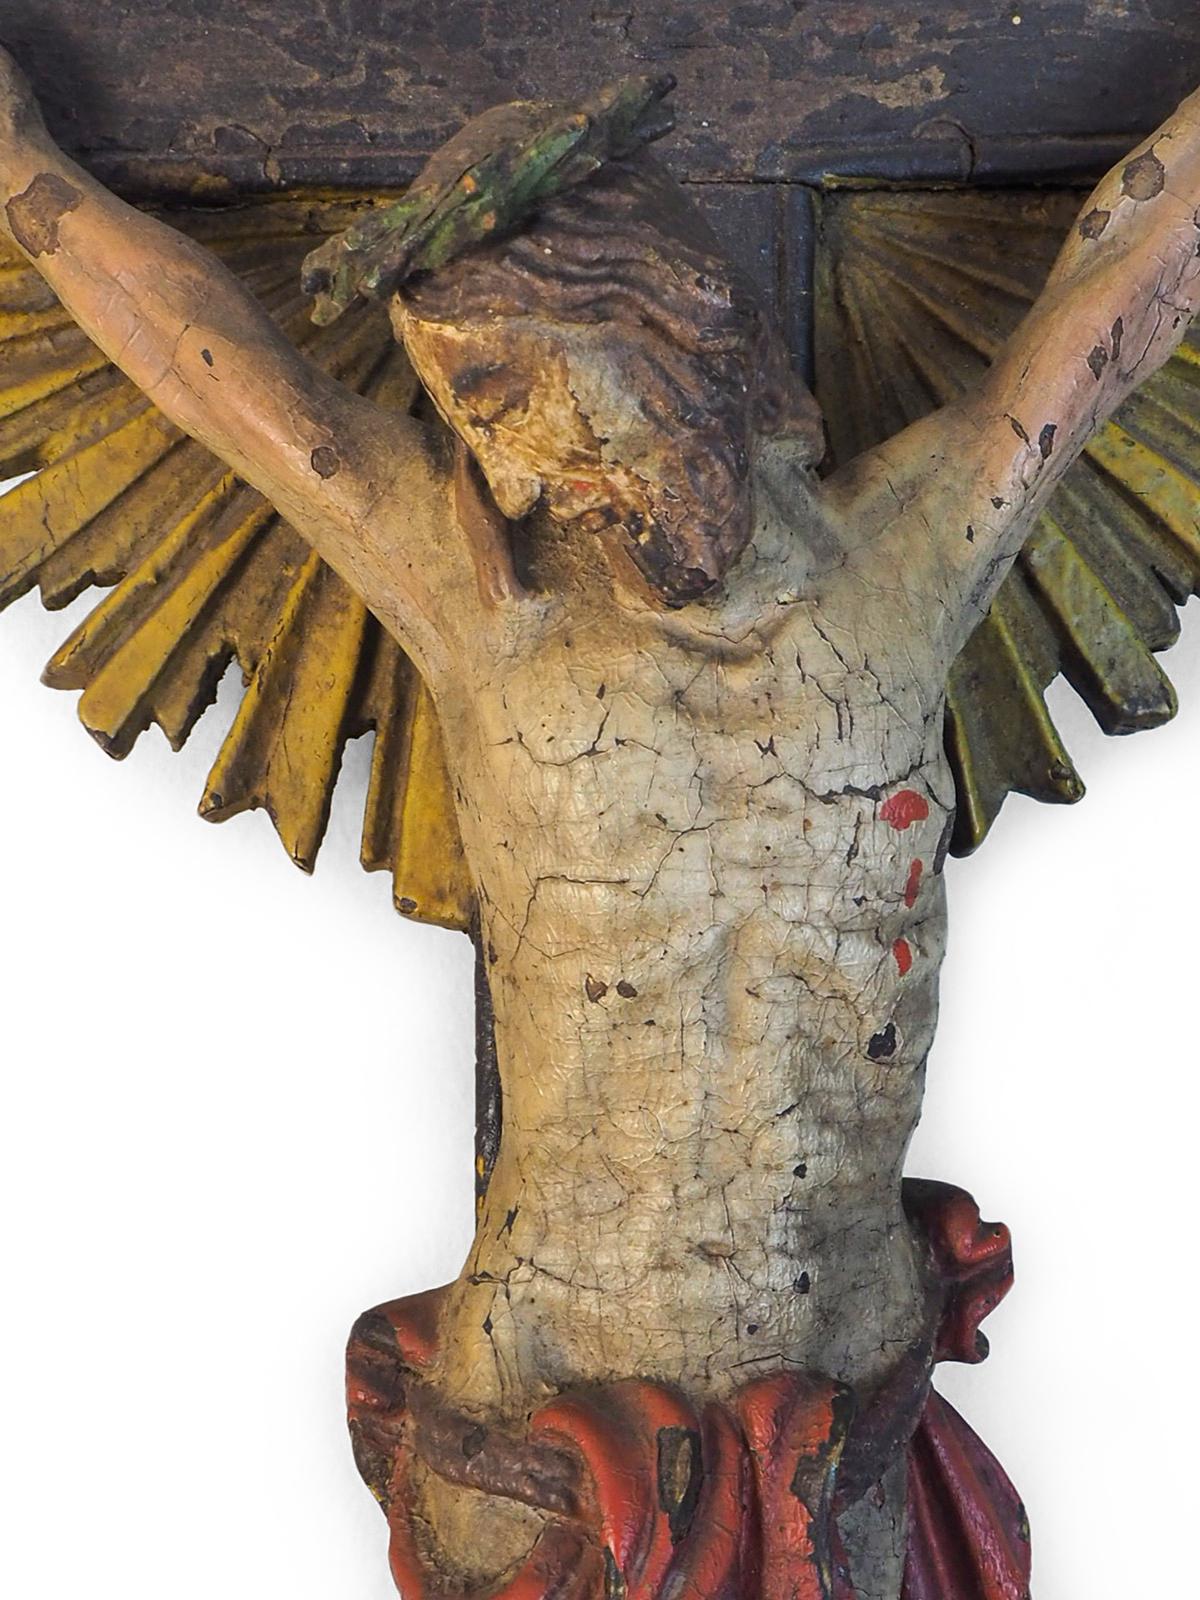 Italienischer geschnitzter, polychrom bemalter Corpus Christi aus dem 17.
Starburst Kruzifix/Kreuz

Ein exzellentes Exemplar mit aufwändig geschnitzten Details auf der Korpusfläche
und Körper

Wandhalterung, kann ursprünglich auf einem Ständer